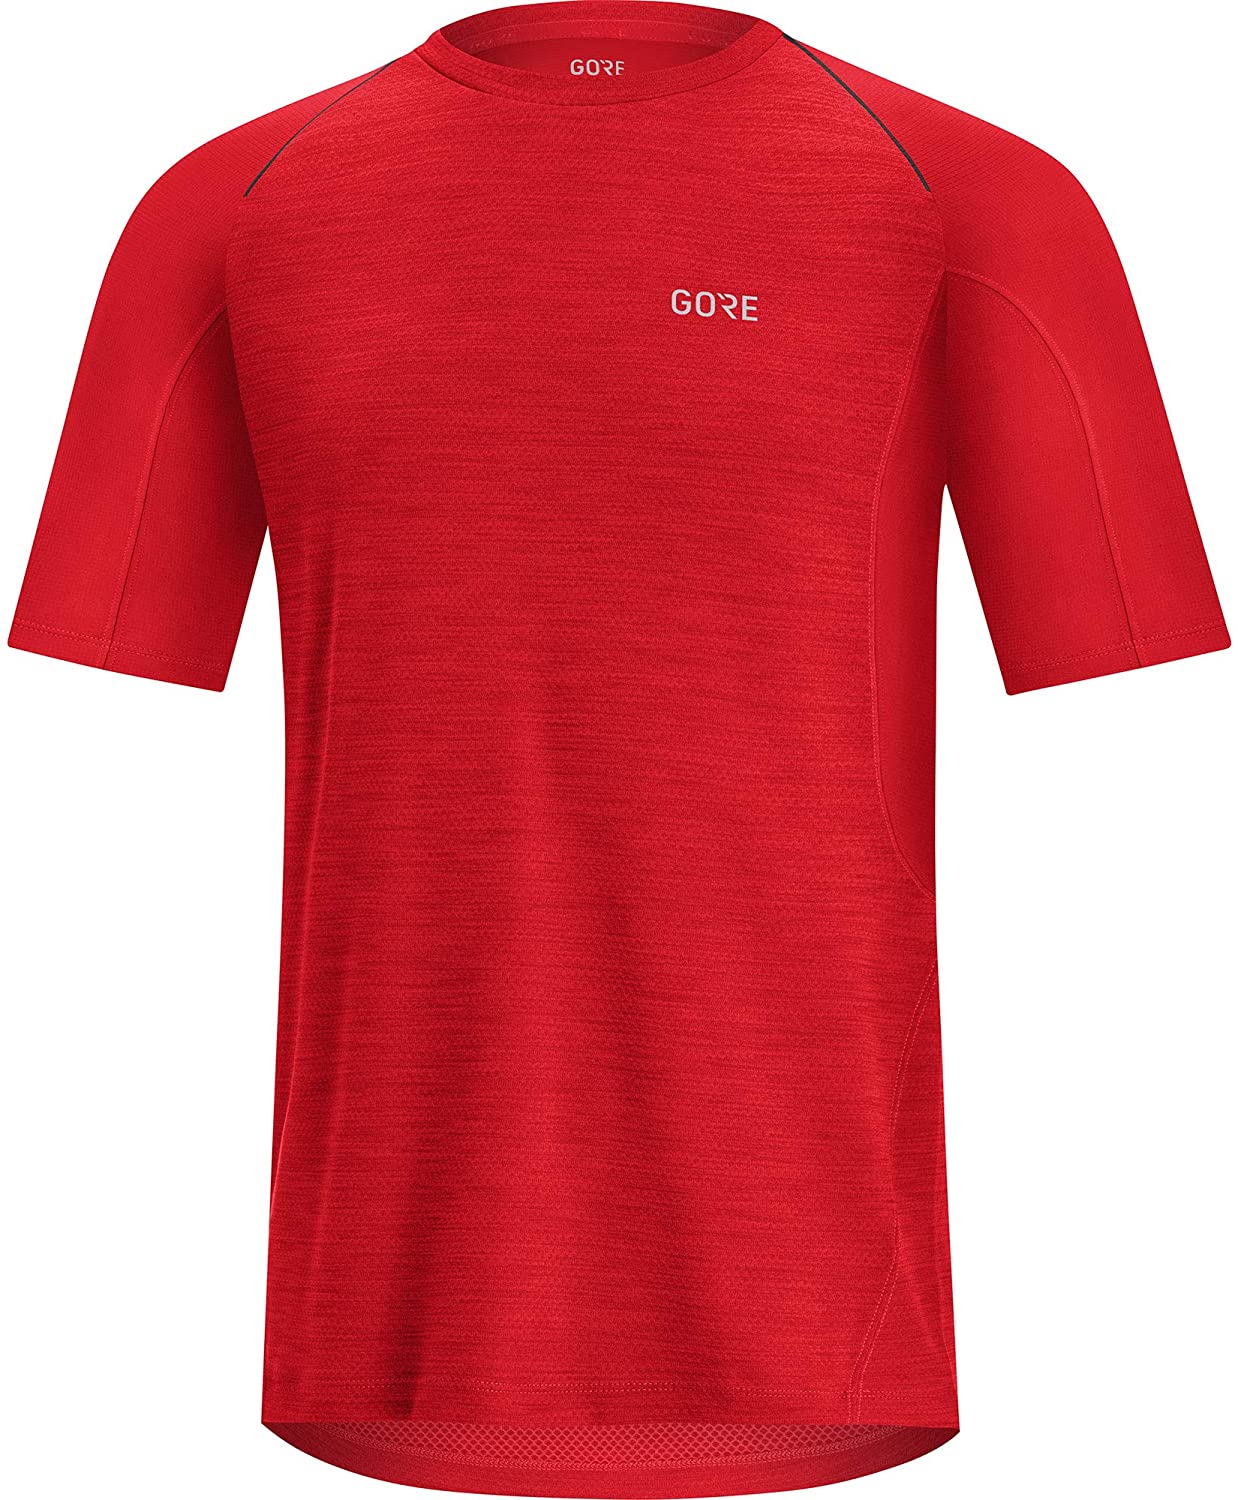 Gore Wear R5 Shirt - T-shirt - Herren